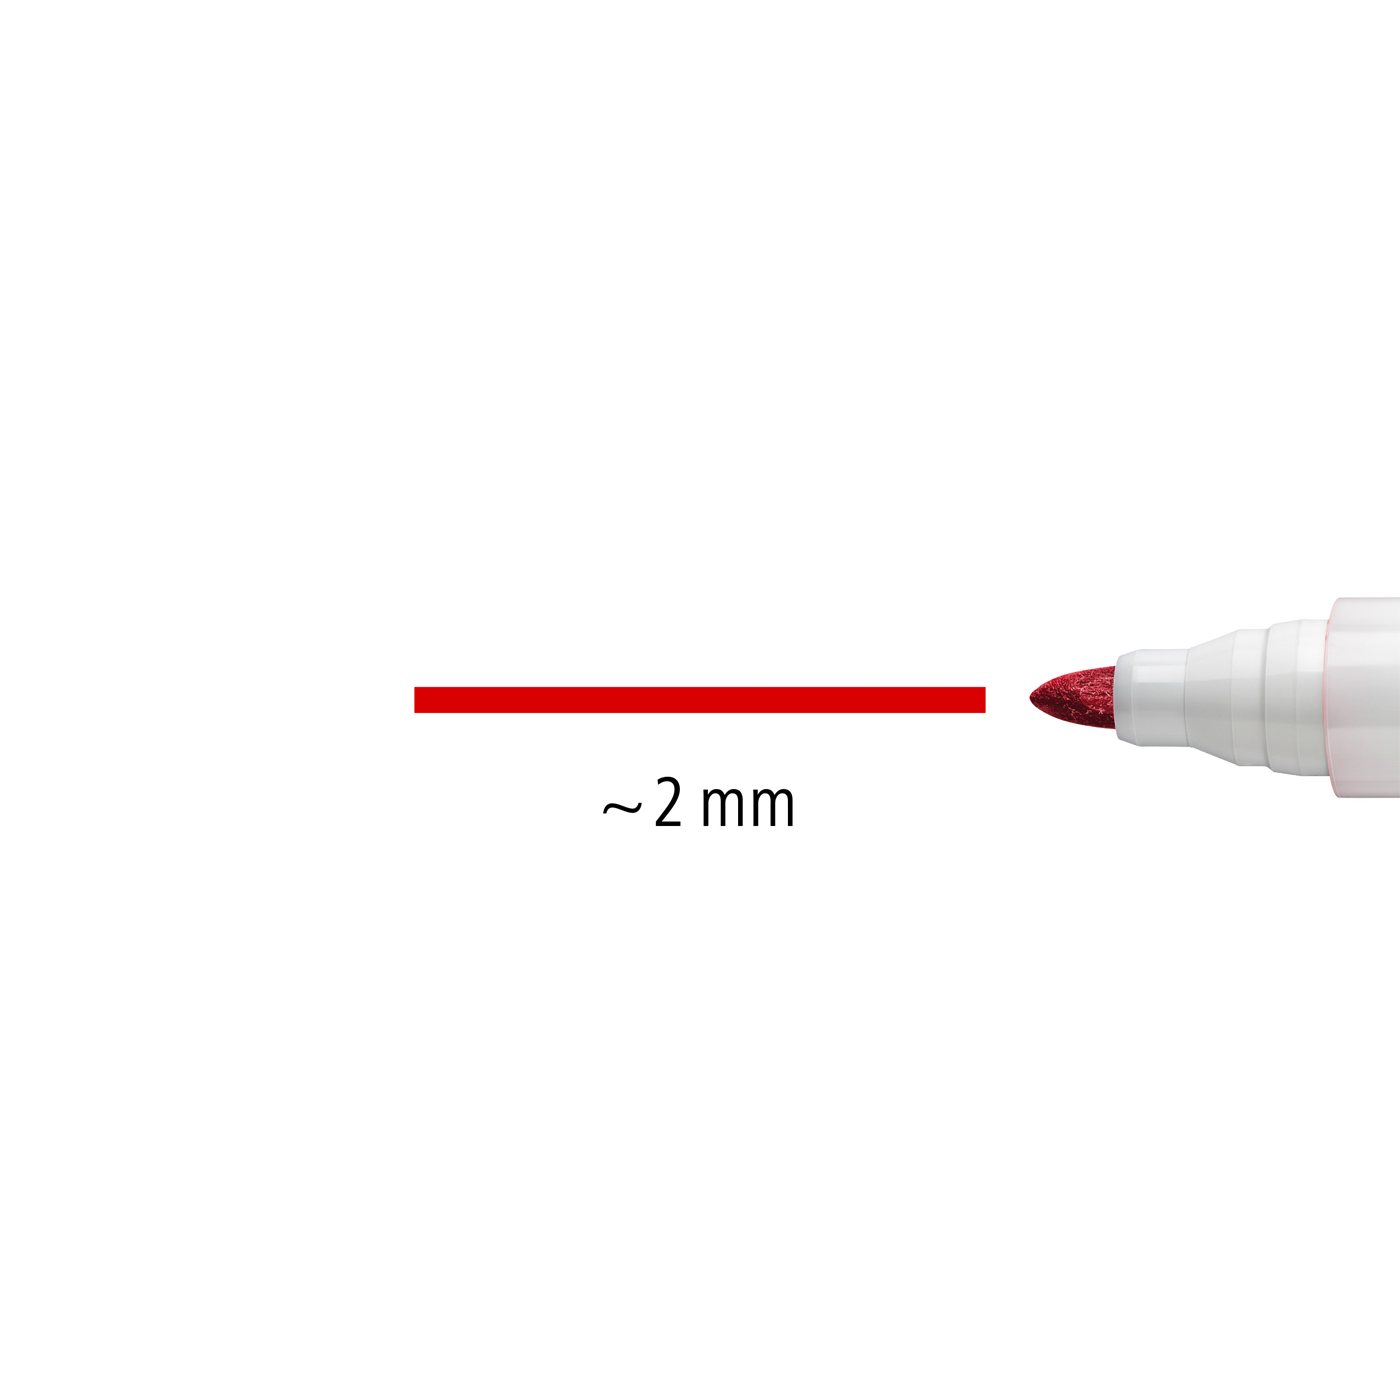 Staedtler Whiteboard Marker Lumocolor Bullet Tip Red